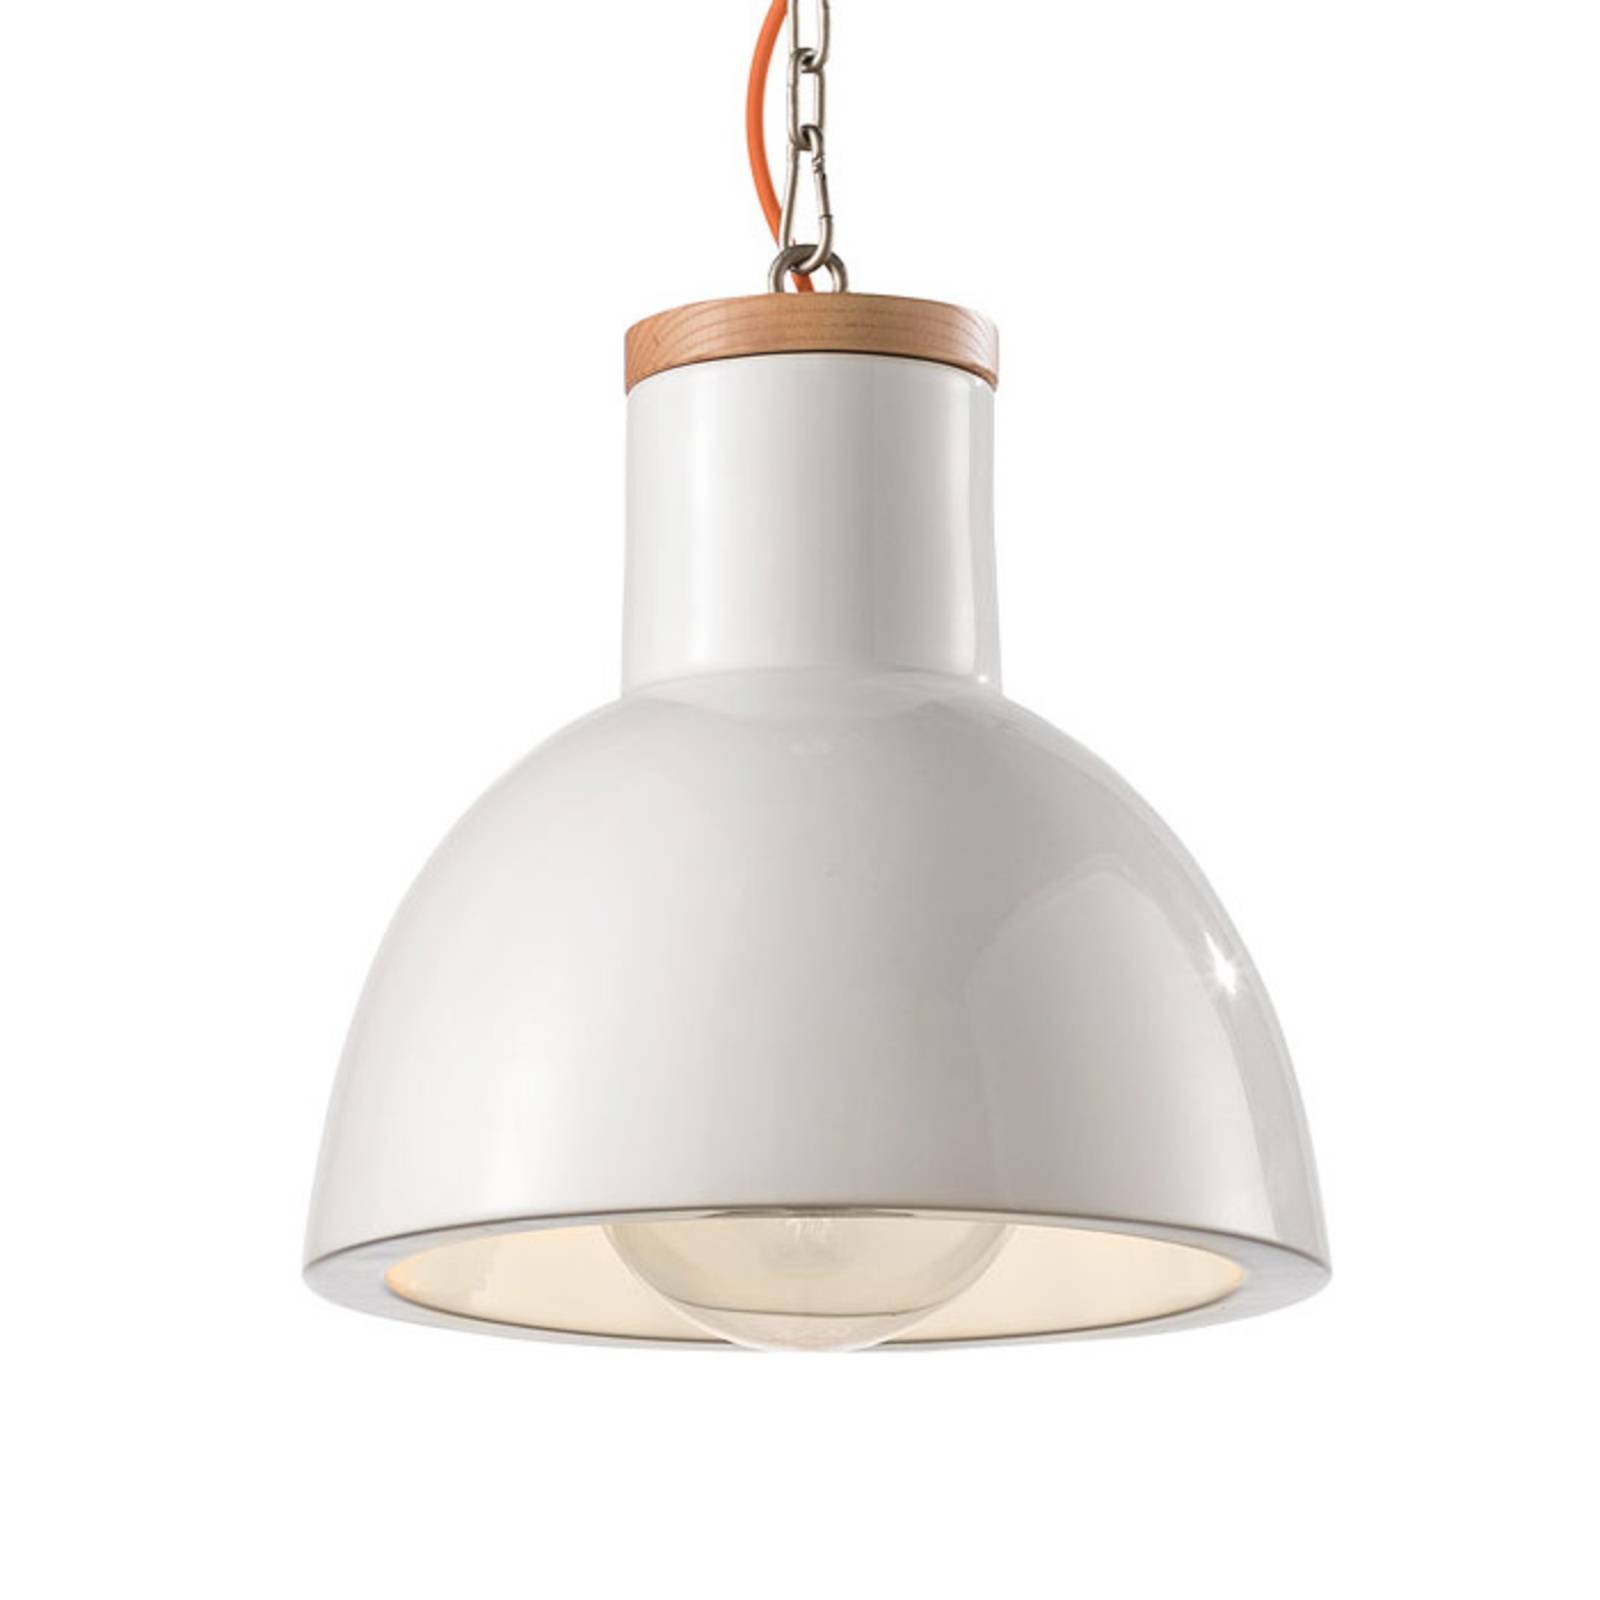 Hanglamp C1781 in Scandinavische stijl wit